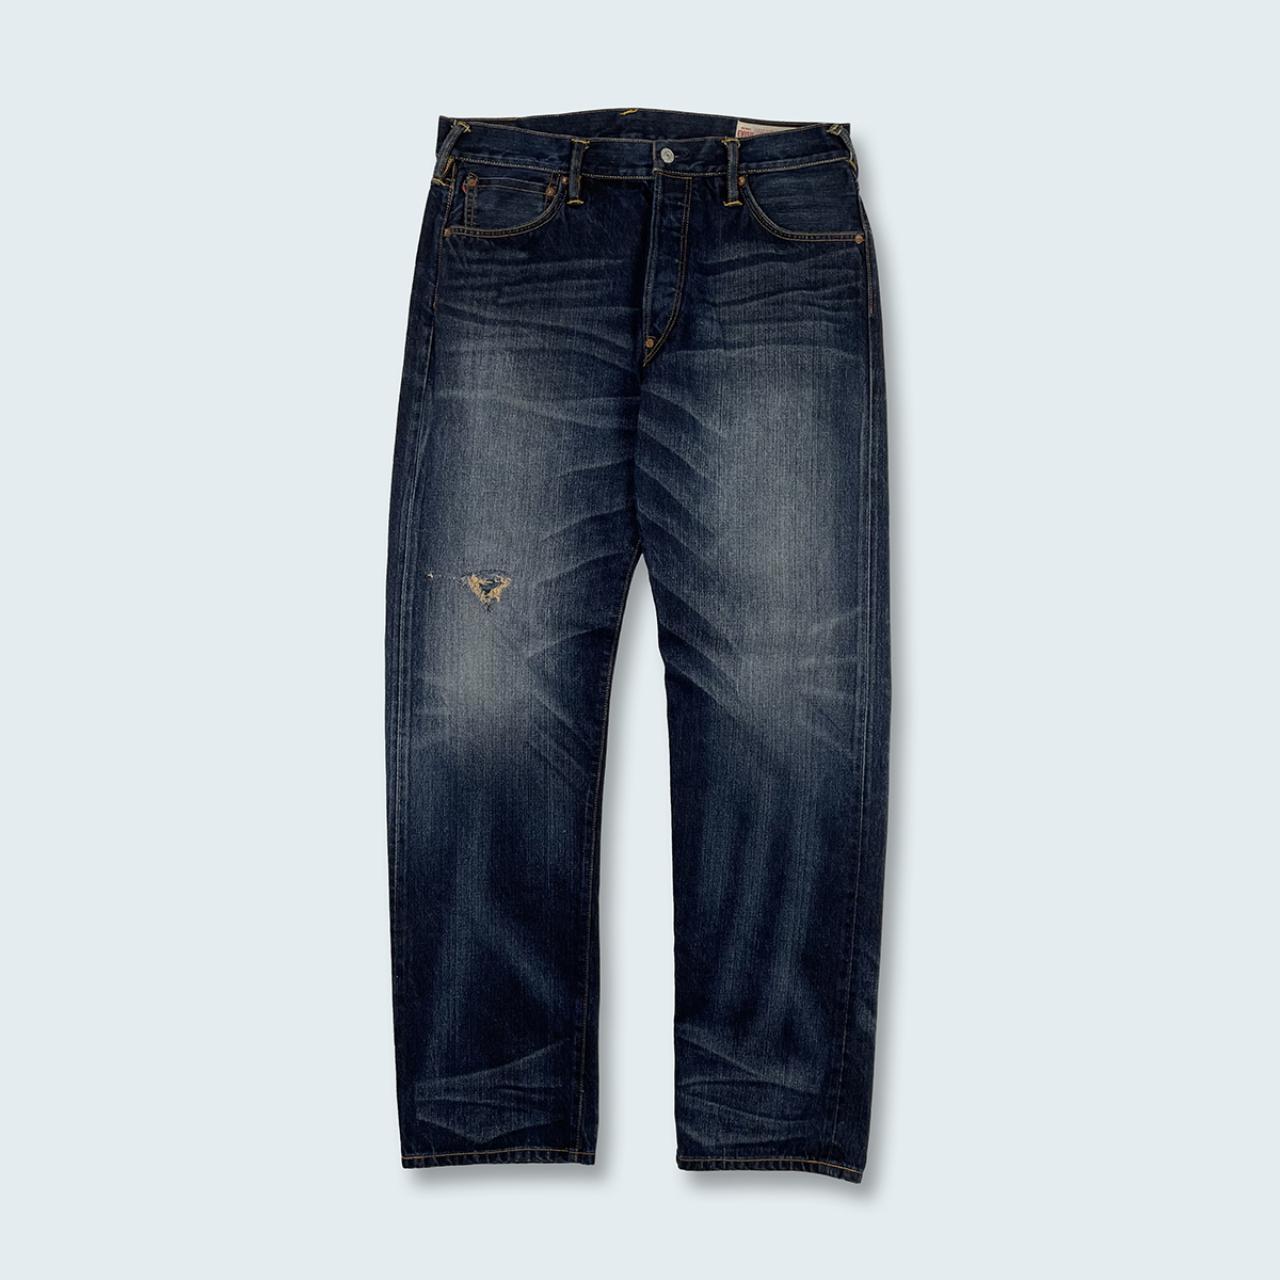 Authentic Vintage Evisu Diacock Jeans  (34")